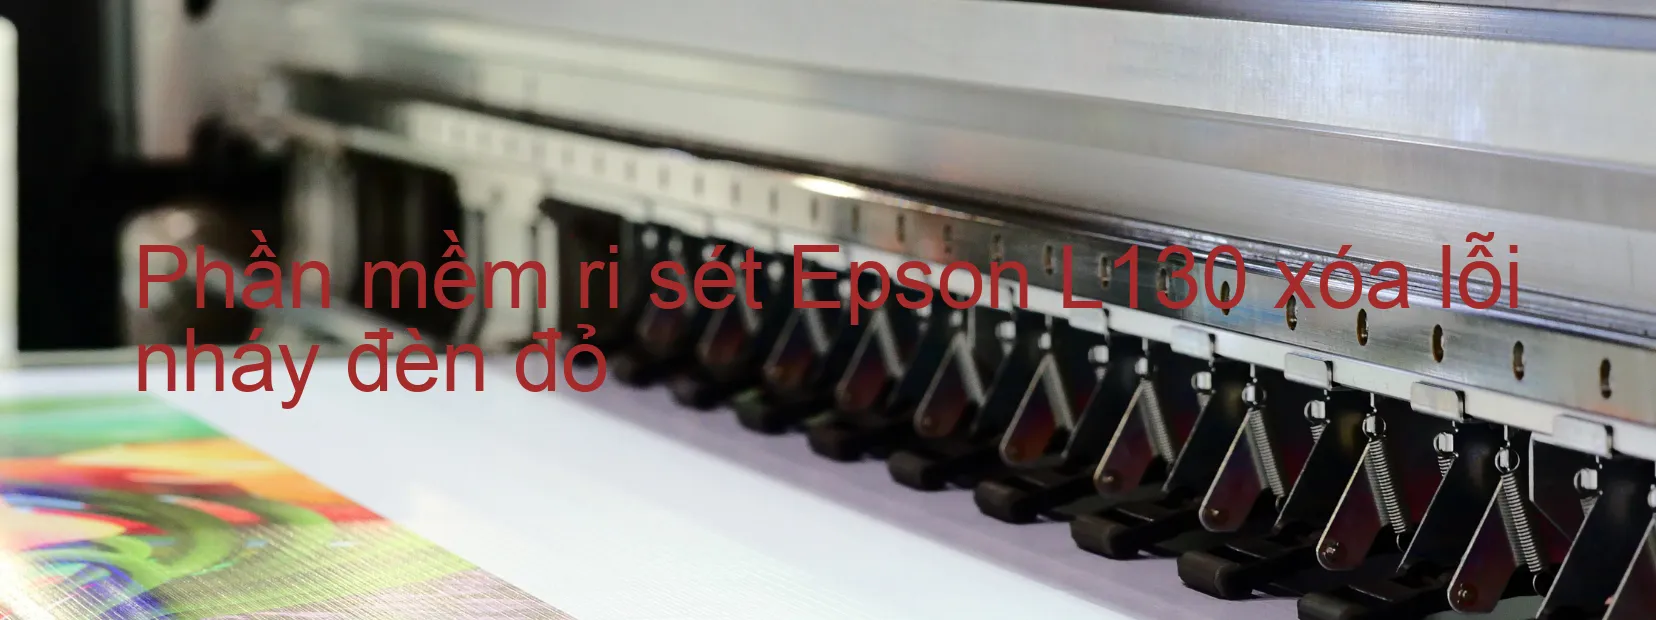 Phần mềm reset Epson L130 xóa lỗi nháy đèn đỏ